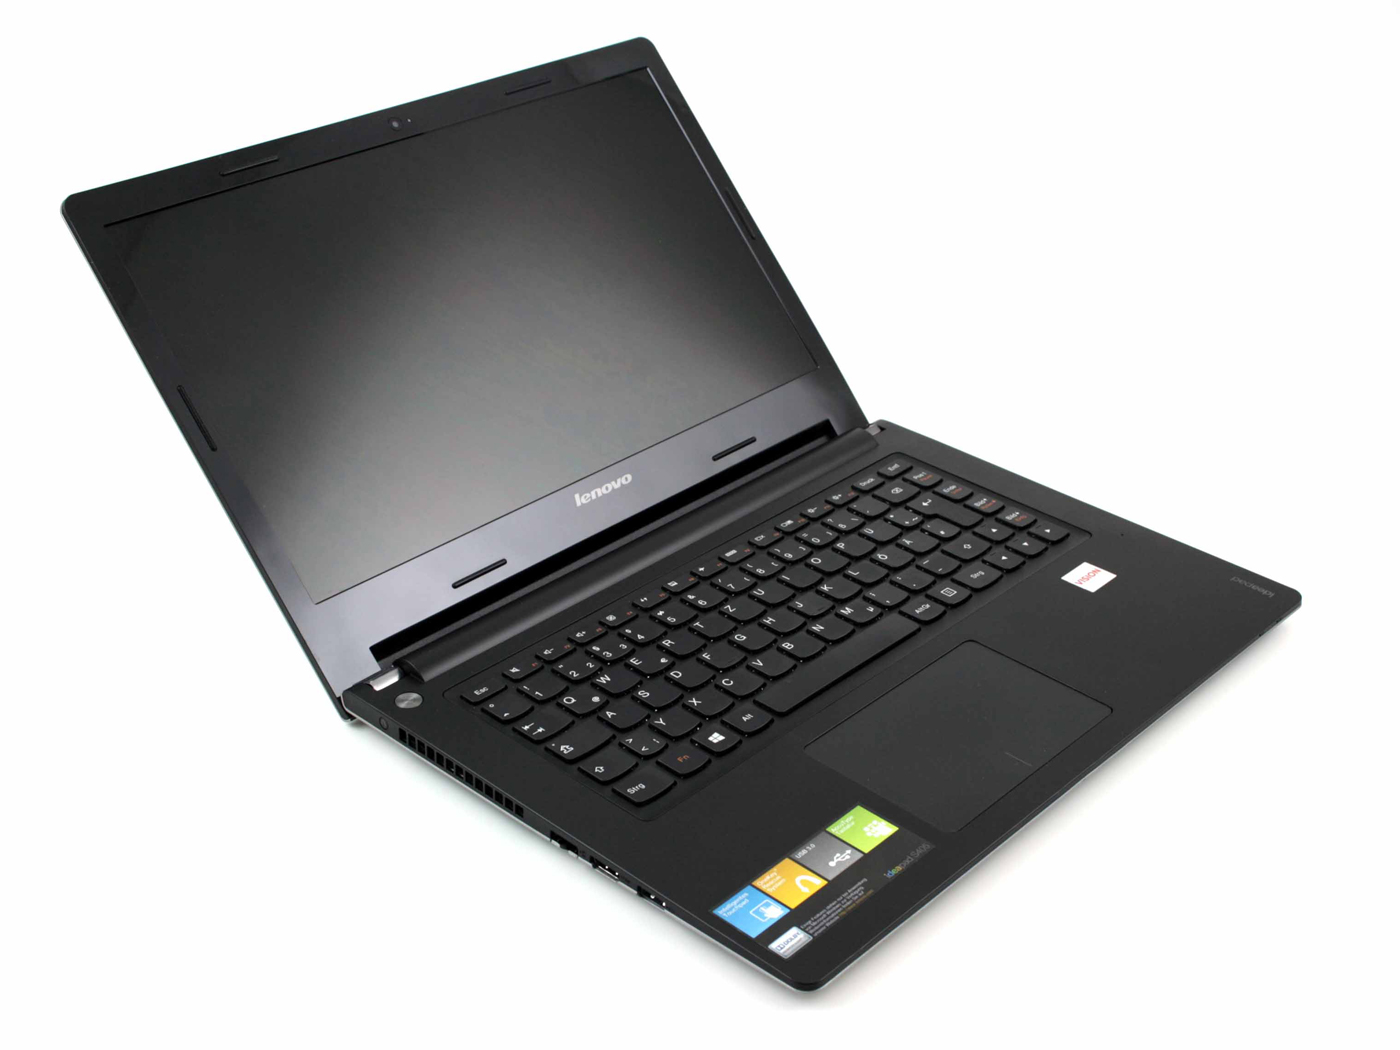 Lenovo Ideapad S405 Notebook0